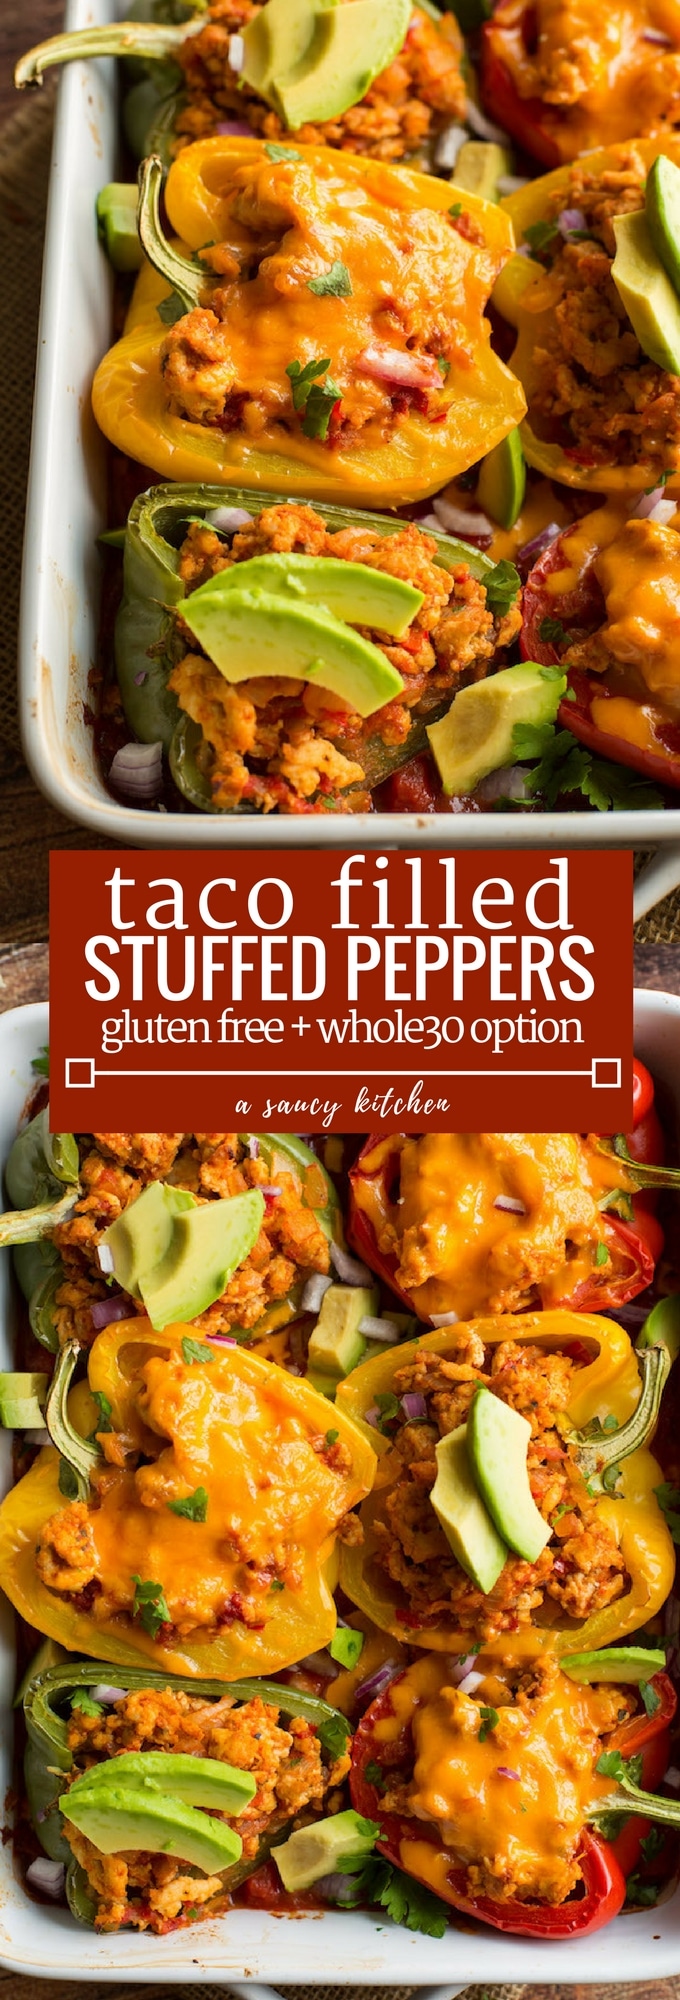 taco stuffed peppers (paleo/whole option)